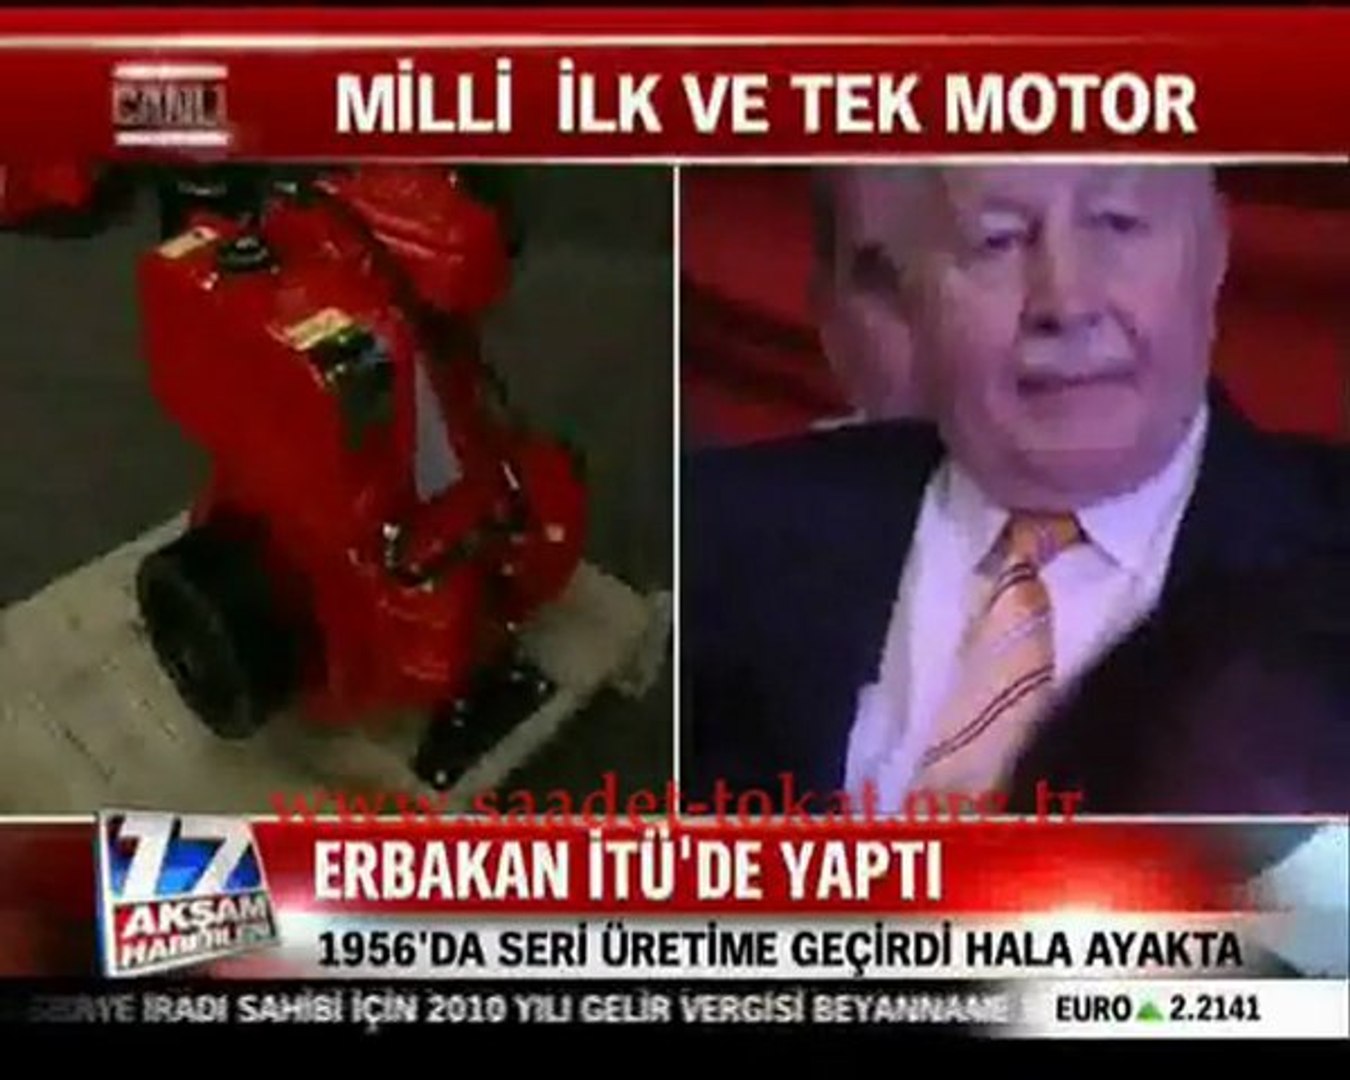 Erbakan Hoca ve Pancar Motor Fabrikası / HaberTürk - Dailymotion Video